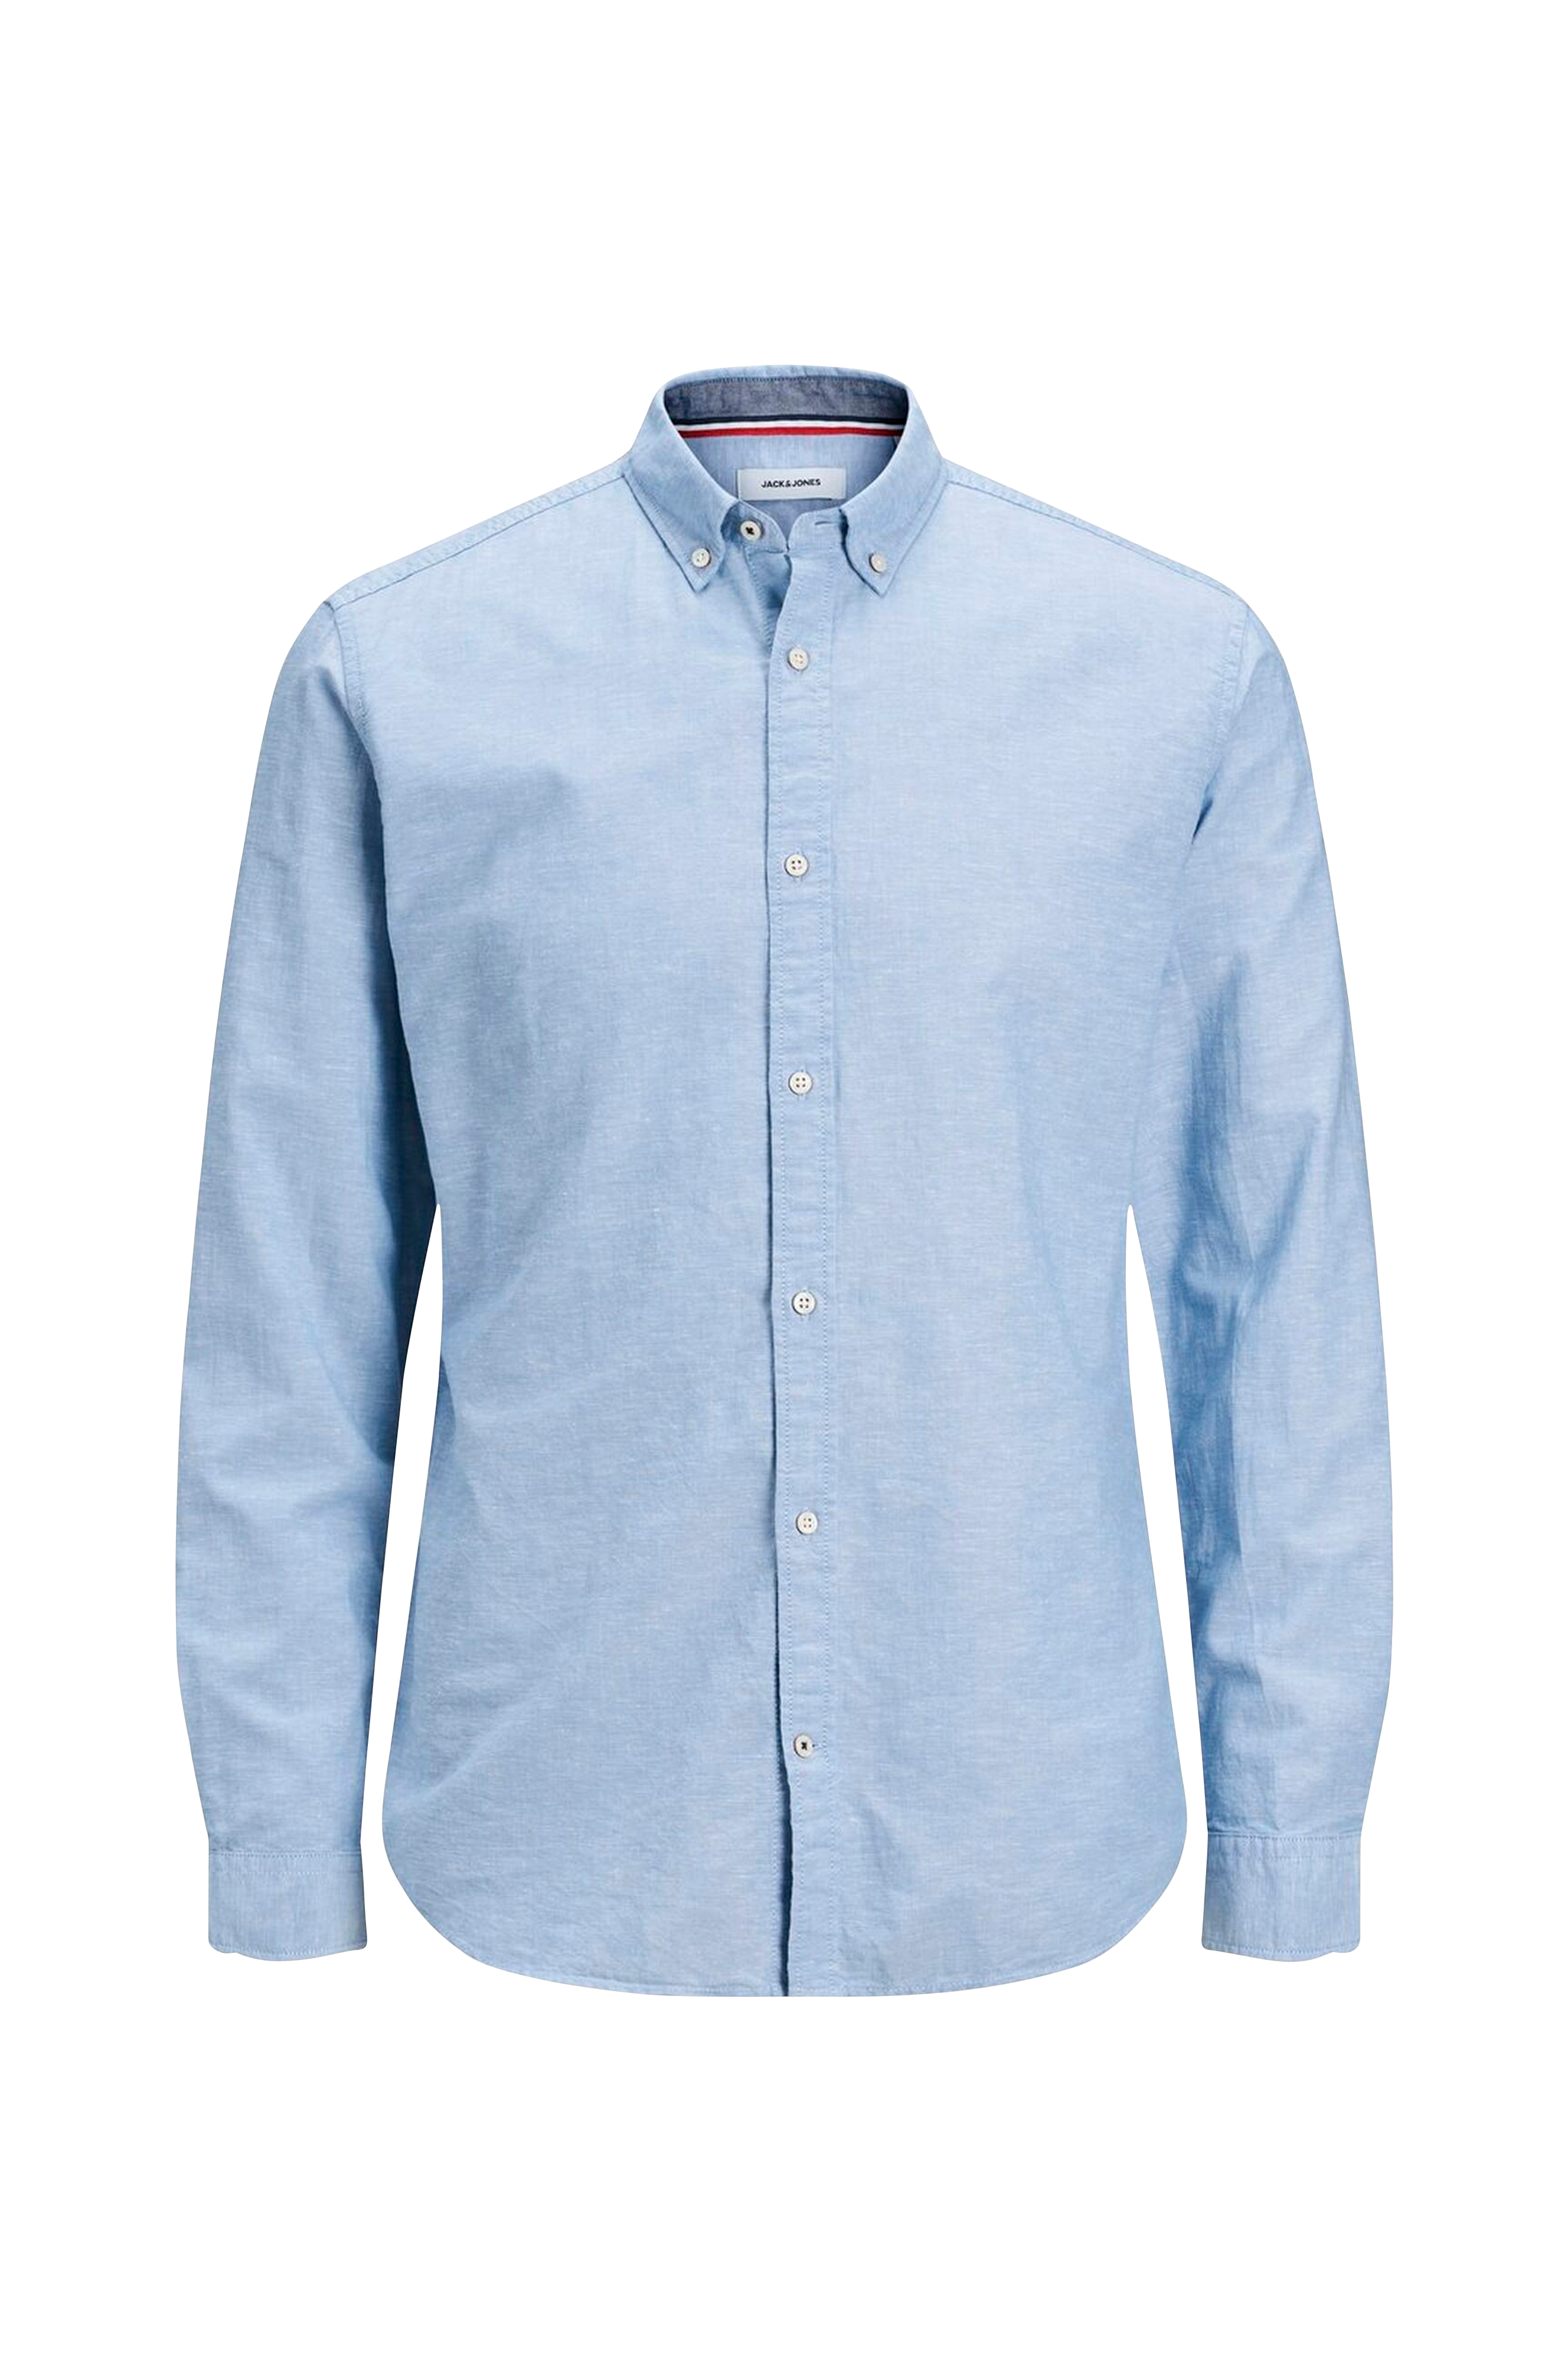 Купить рубашку кнопки. Рубашка Jack Jones. Carhartt рубашка мужская. Jack Jones мужская рубашка рубашка из льна. Синяя рубашка Carhartt Oxford.